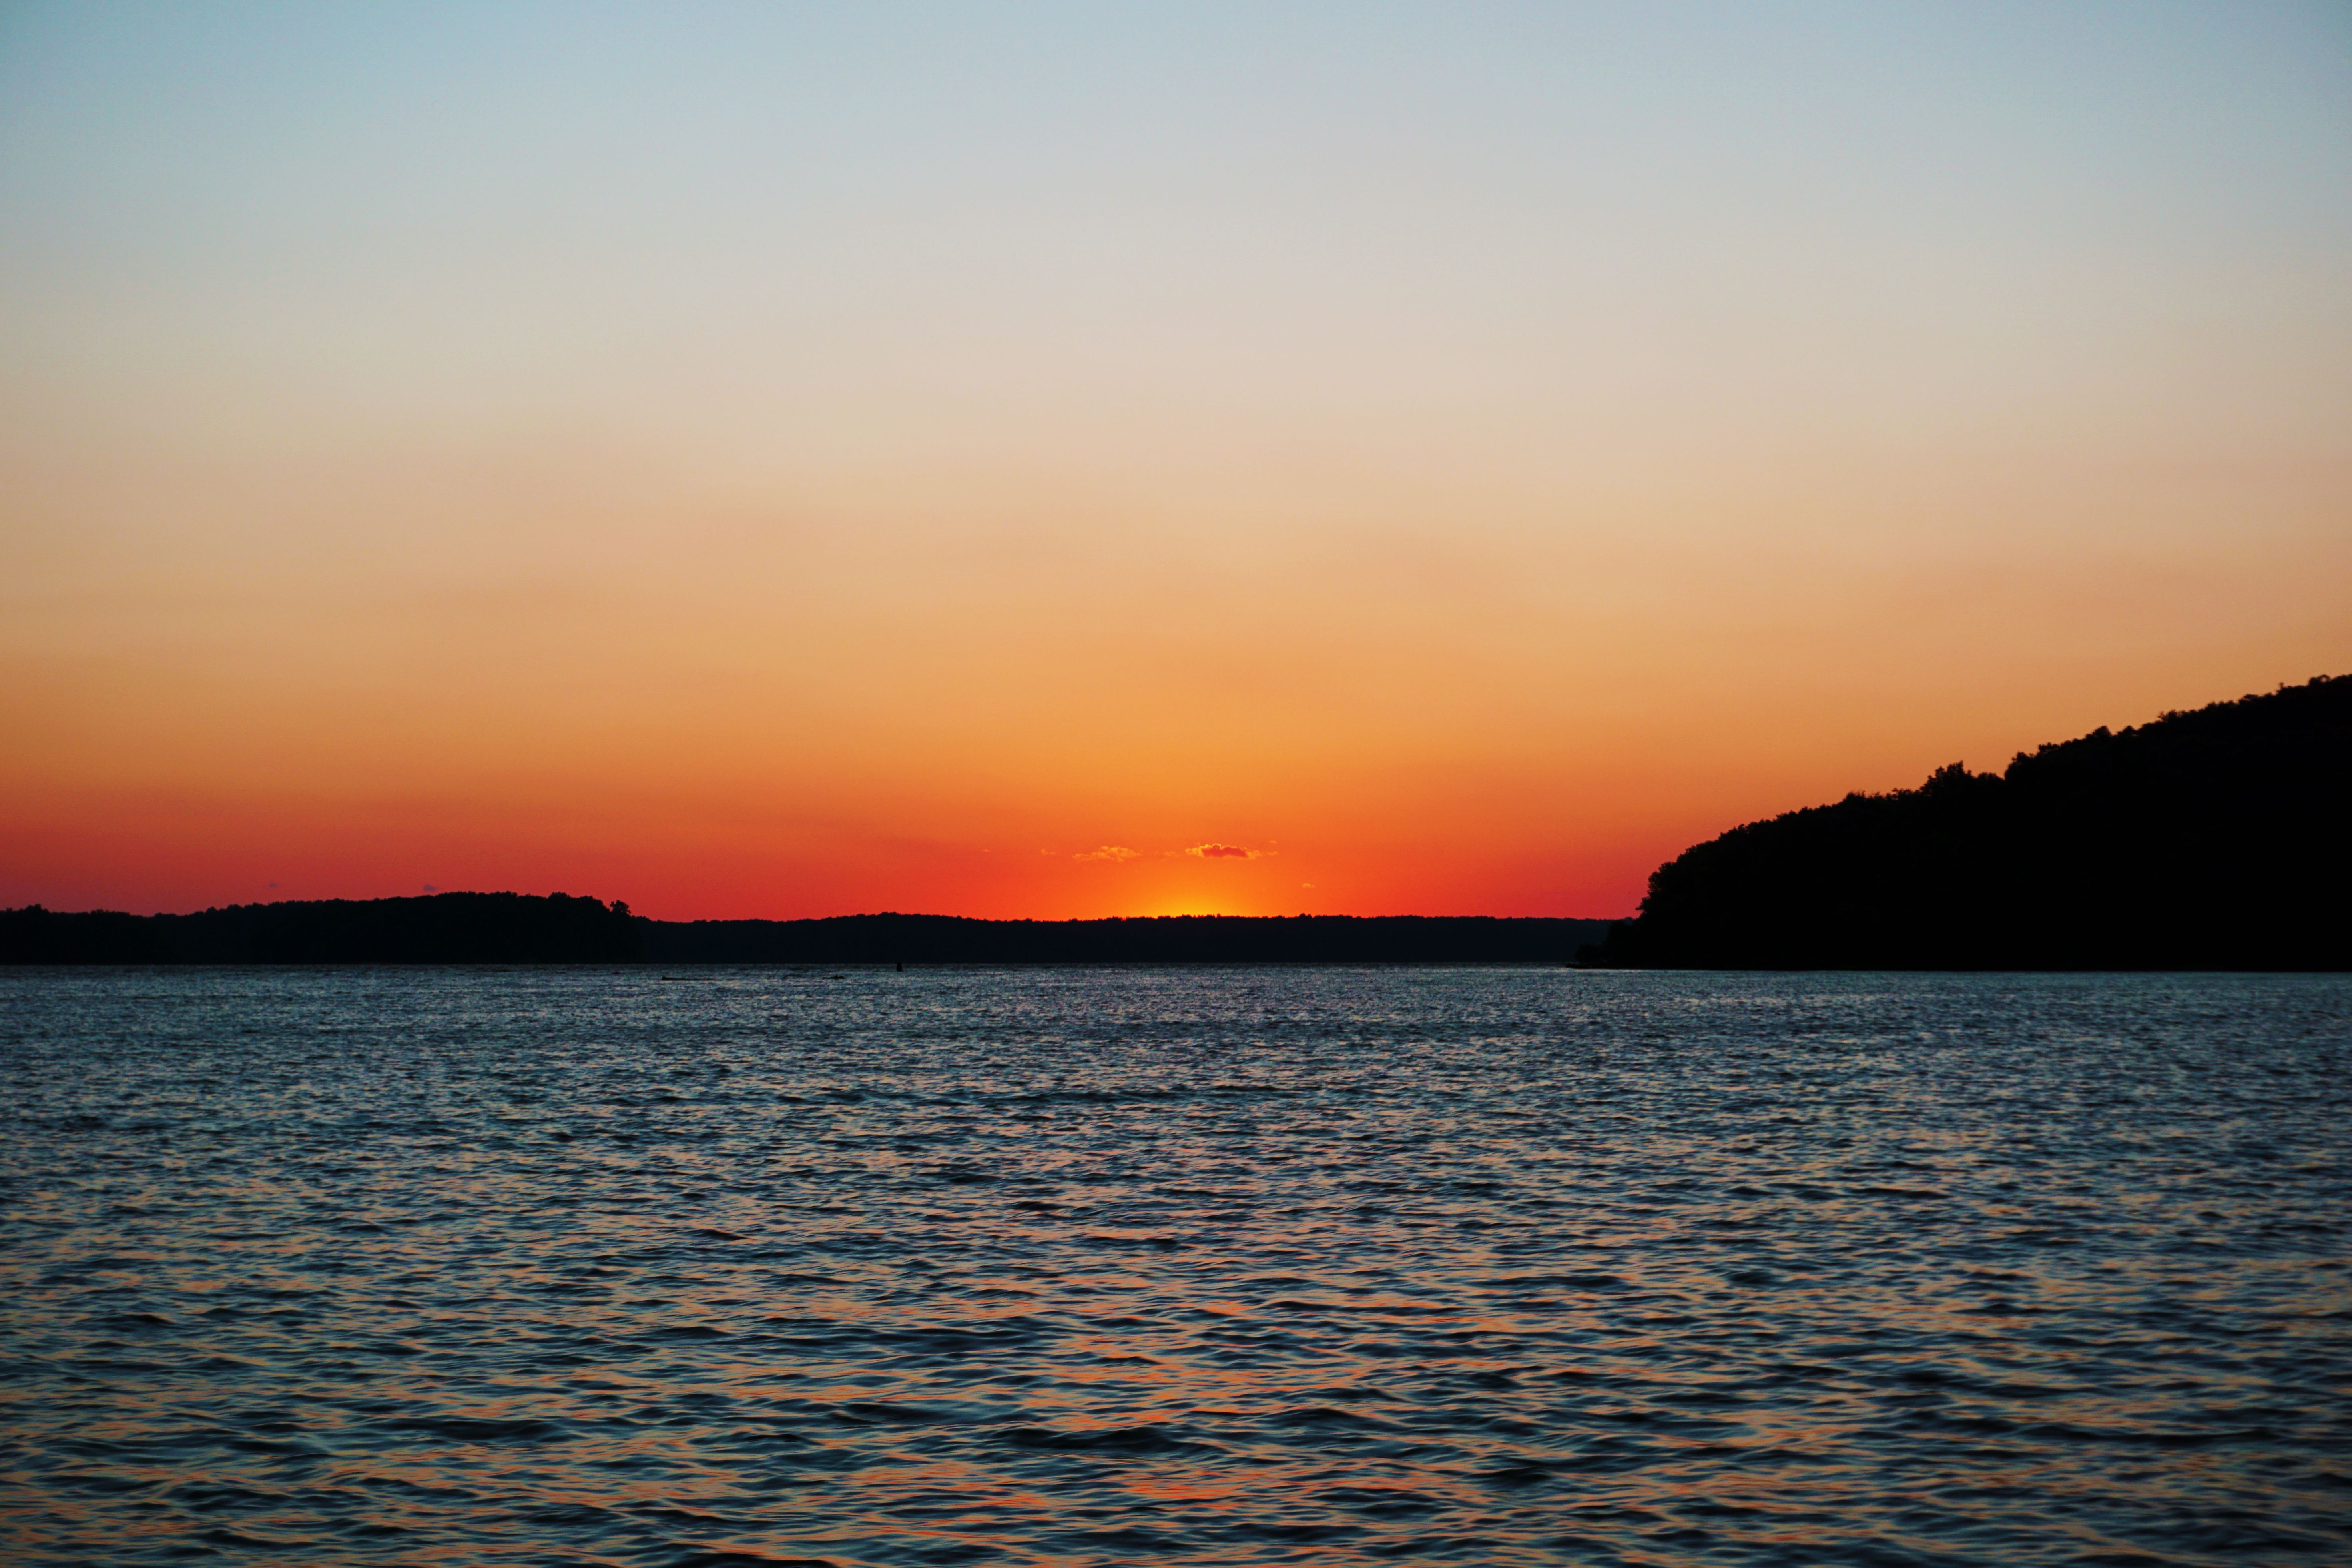  Sunset Lake Barkley